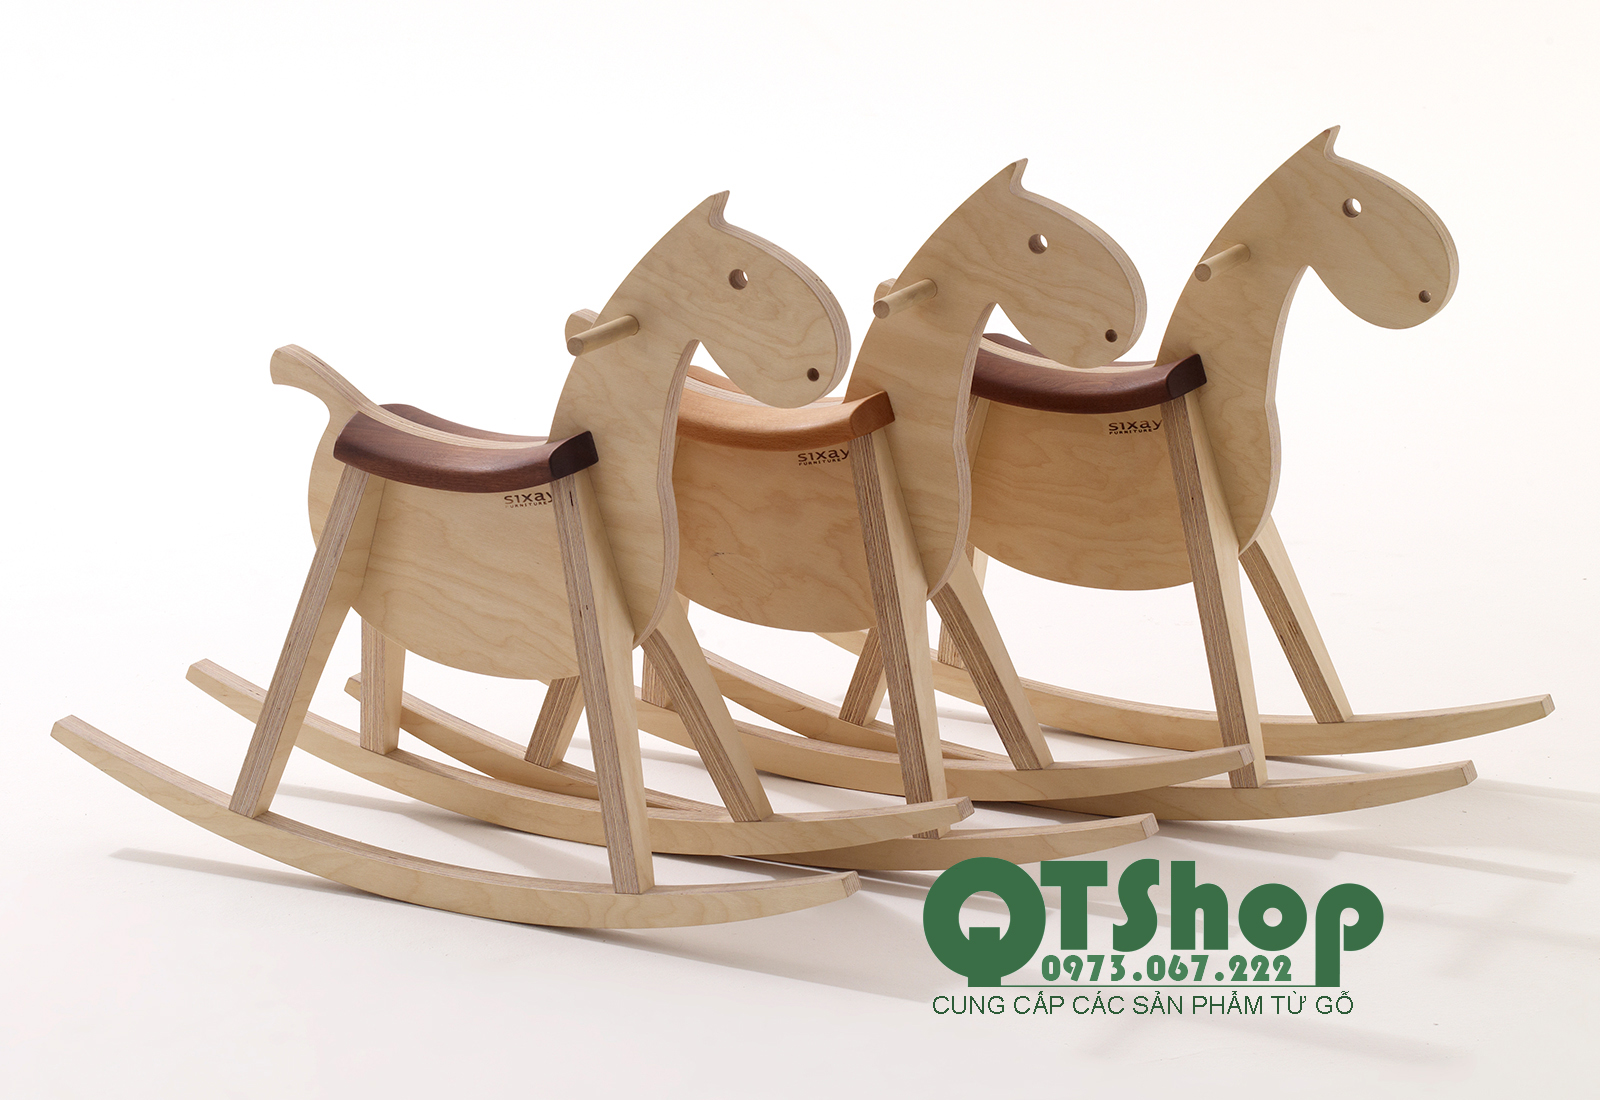 Ngựa gỗ bập bênh thiết kế độc -QTShop